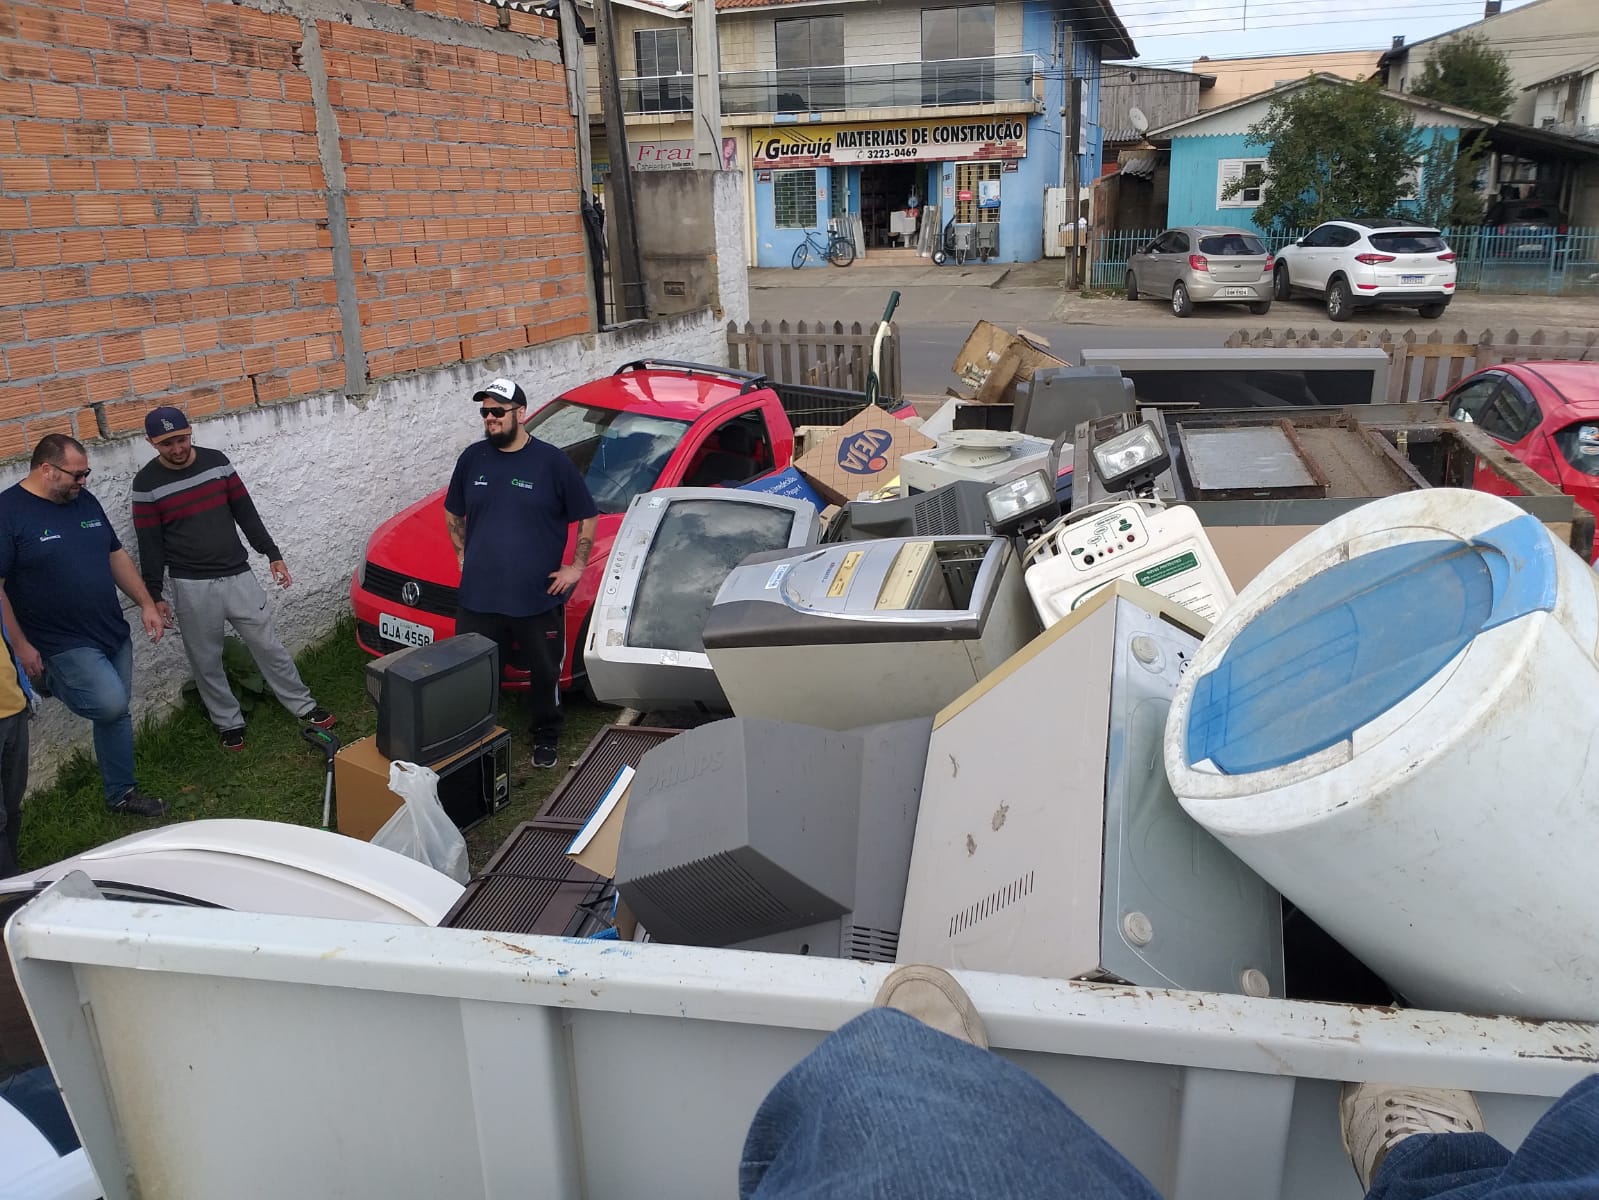 Mutirão do lixo eletrônico, no bairro Guarujá, coleta 4,5 toneladas de materiais